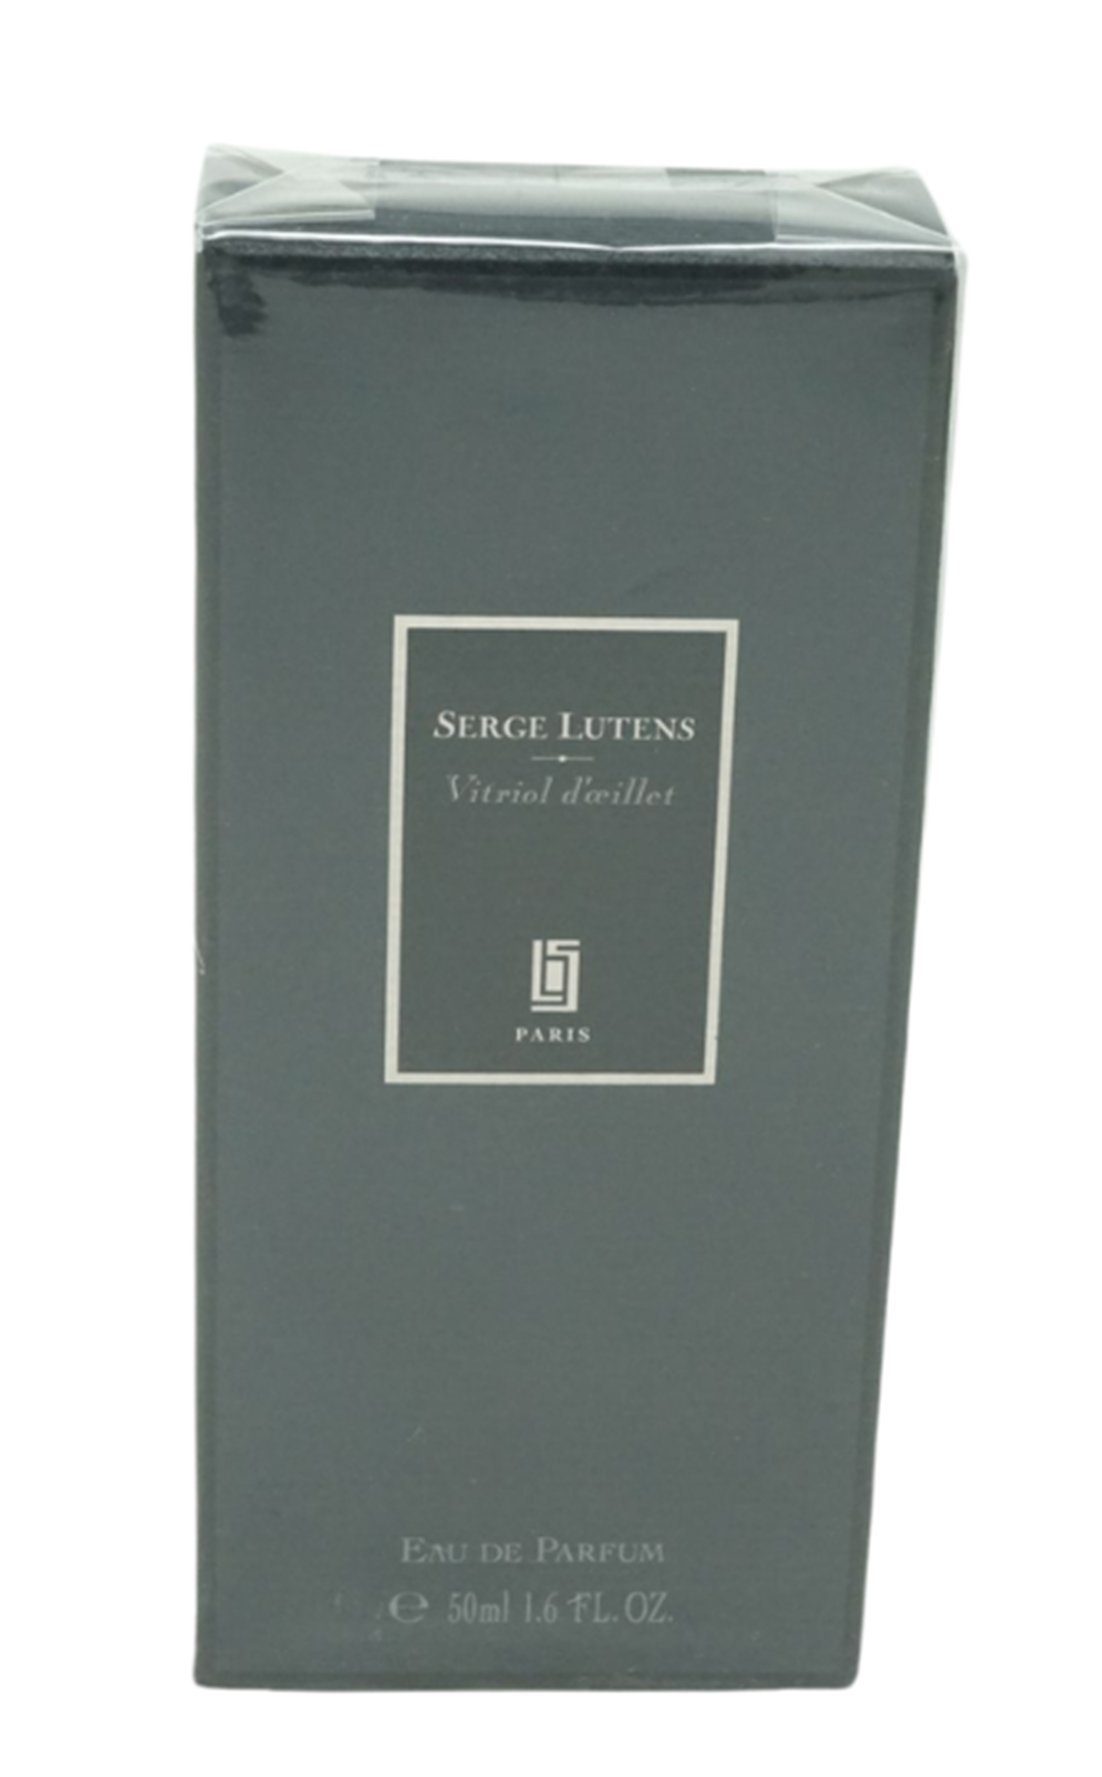 Vitriol 50 Parfum d'ceillet LUTENS Serge SERGE de de Lutens Eau Eau ml Parfum